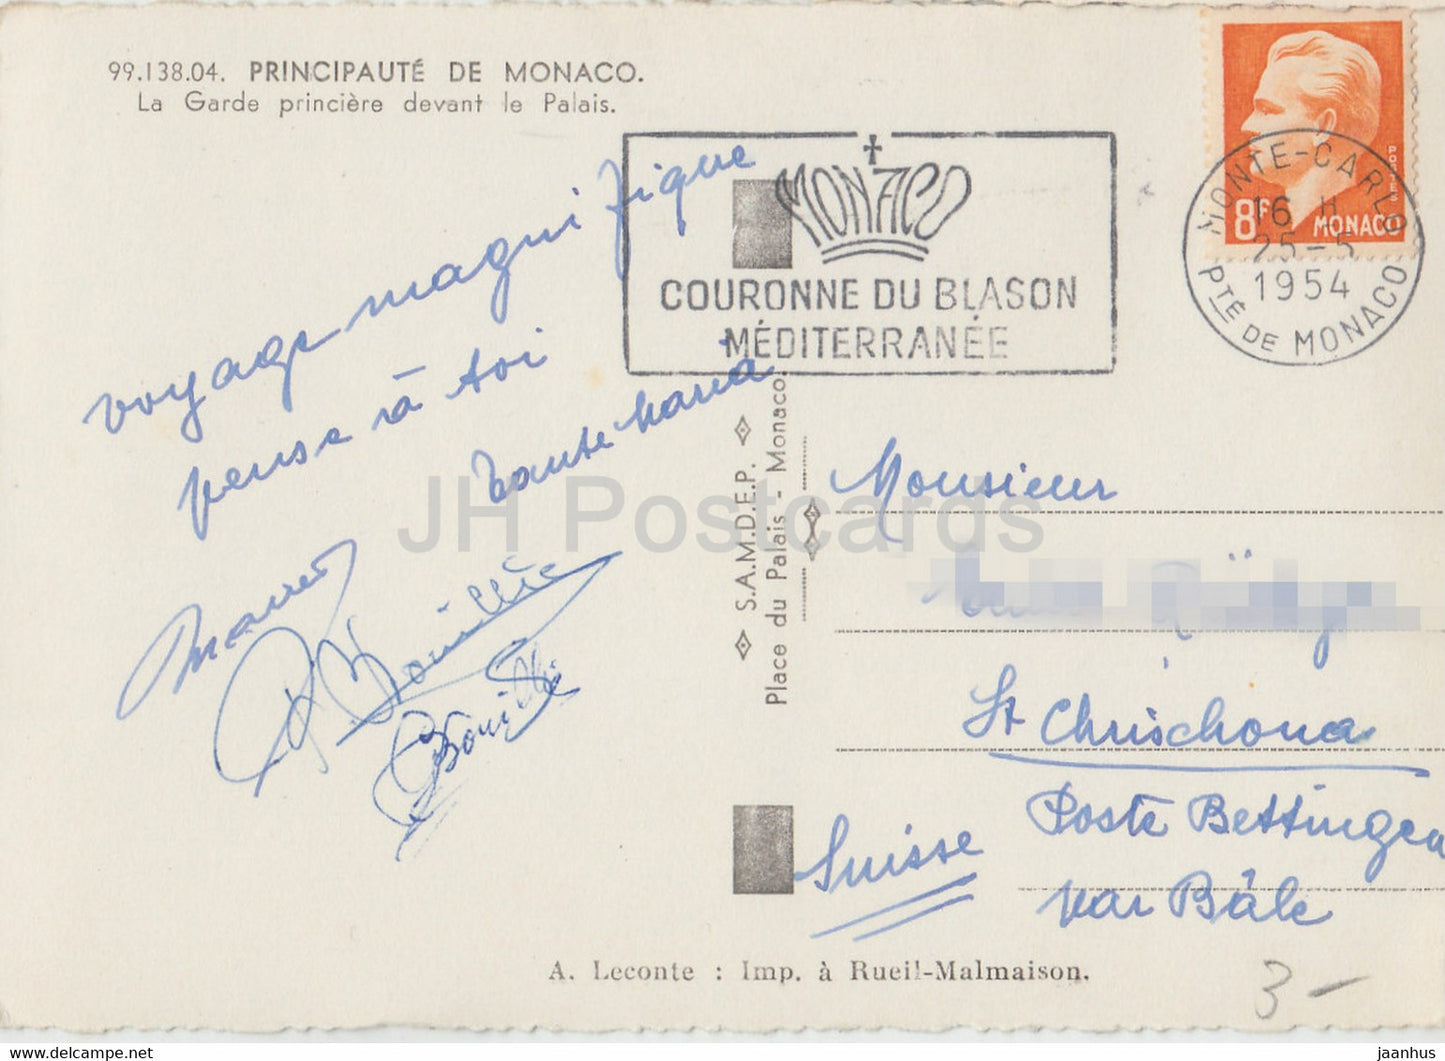 La Garde principale devant le Palais - carte postale ancienne - 1954 - Monaco - occasion